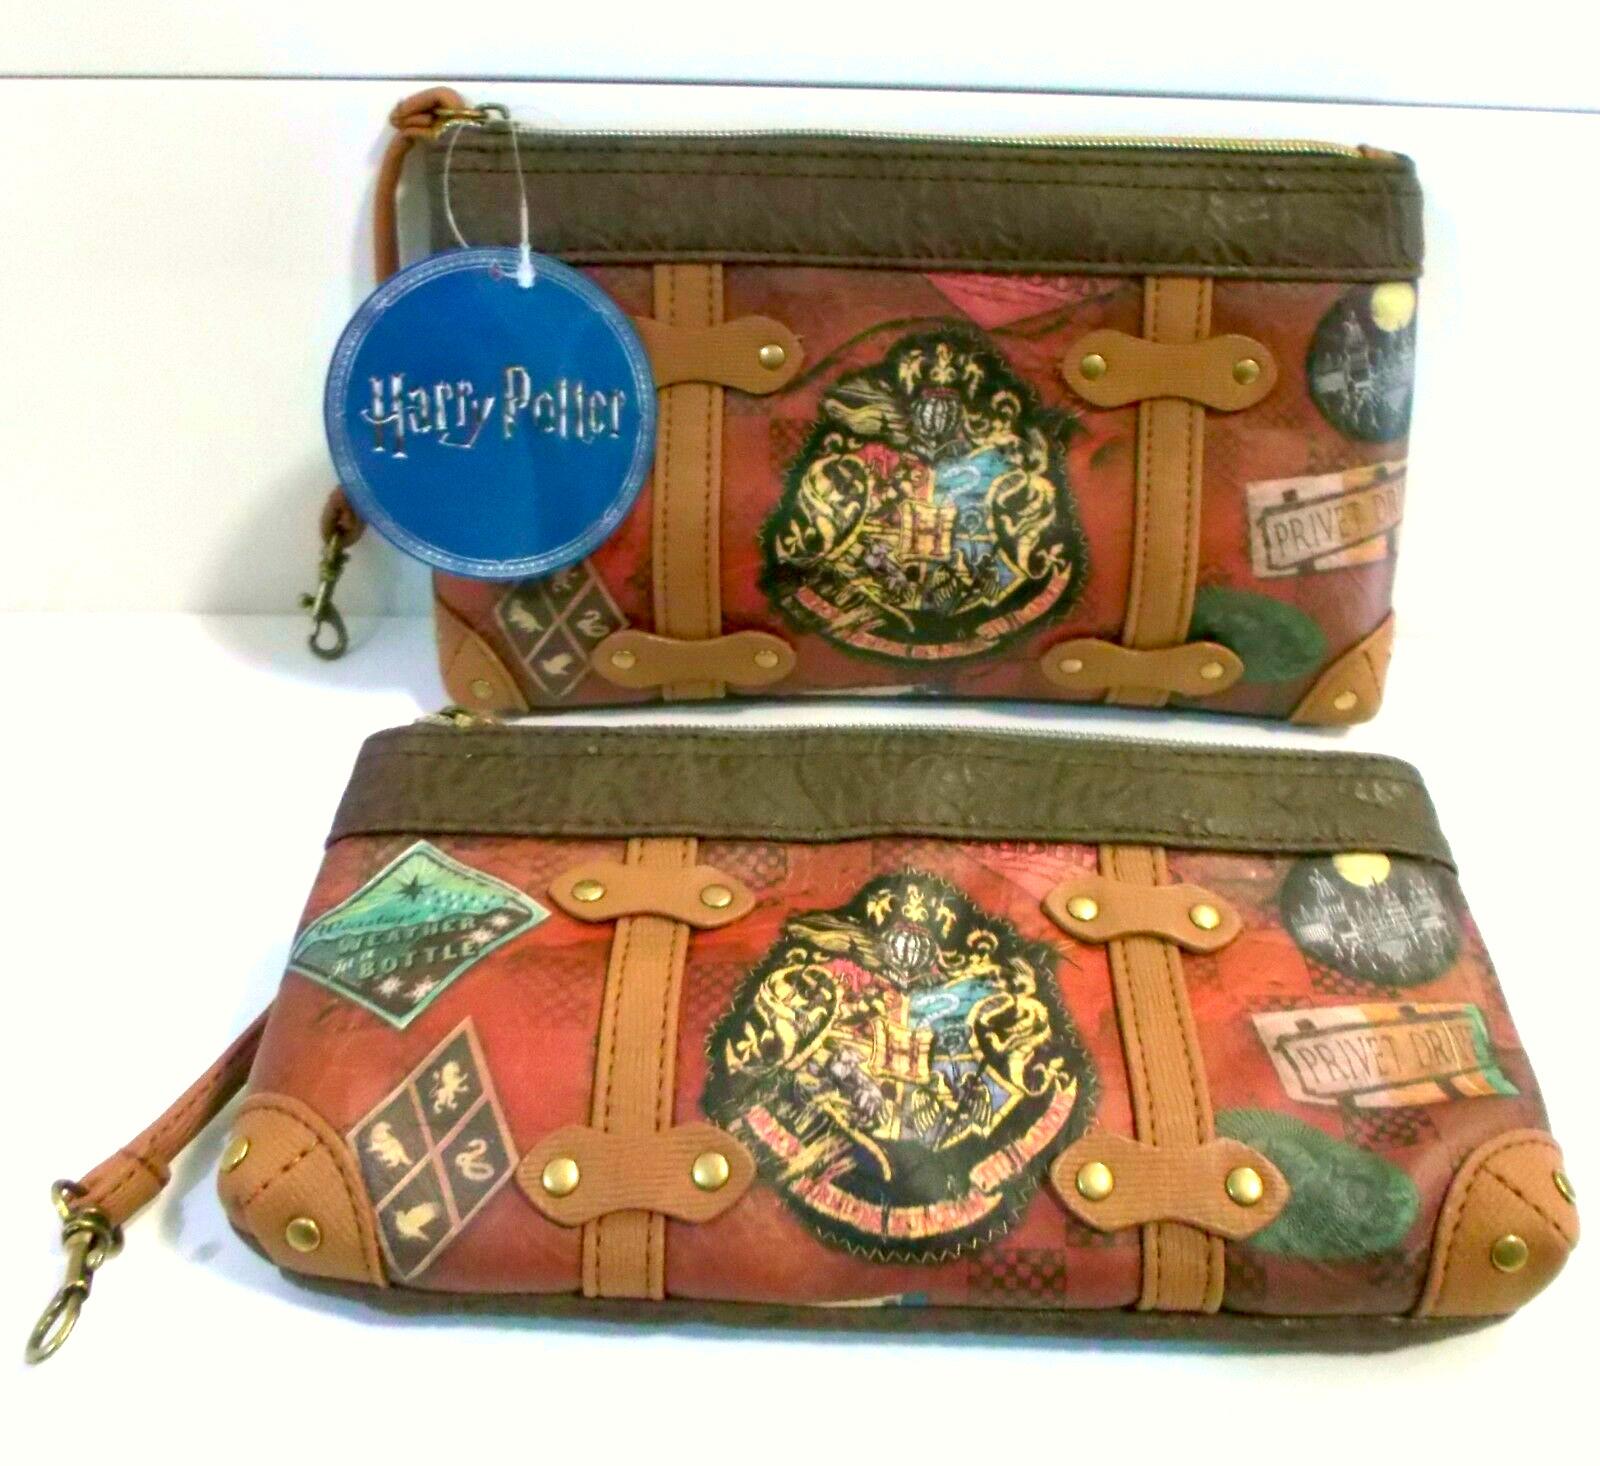 Compra Online Artículos Harry Potter : Bolsos, mochilas, carteras, billeteros, monederos,... en SHOPILANDIA